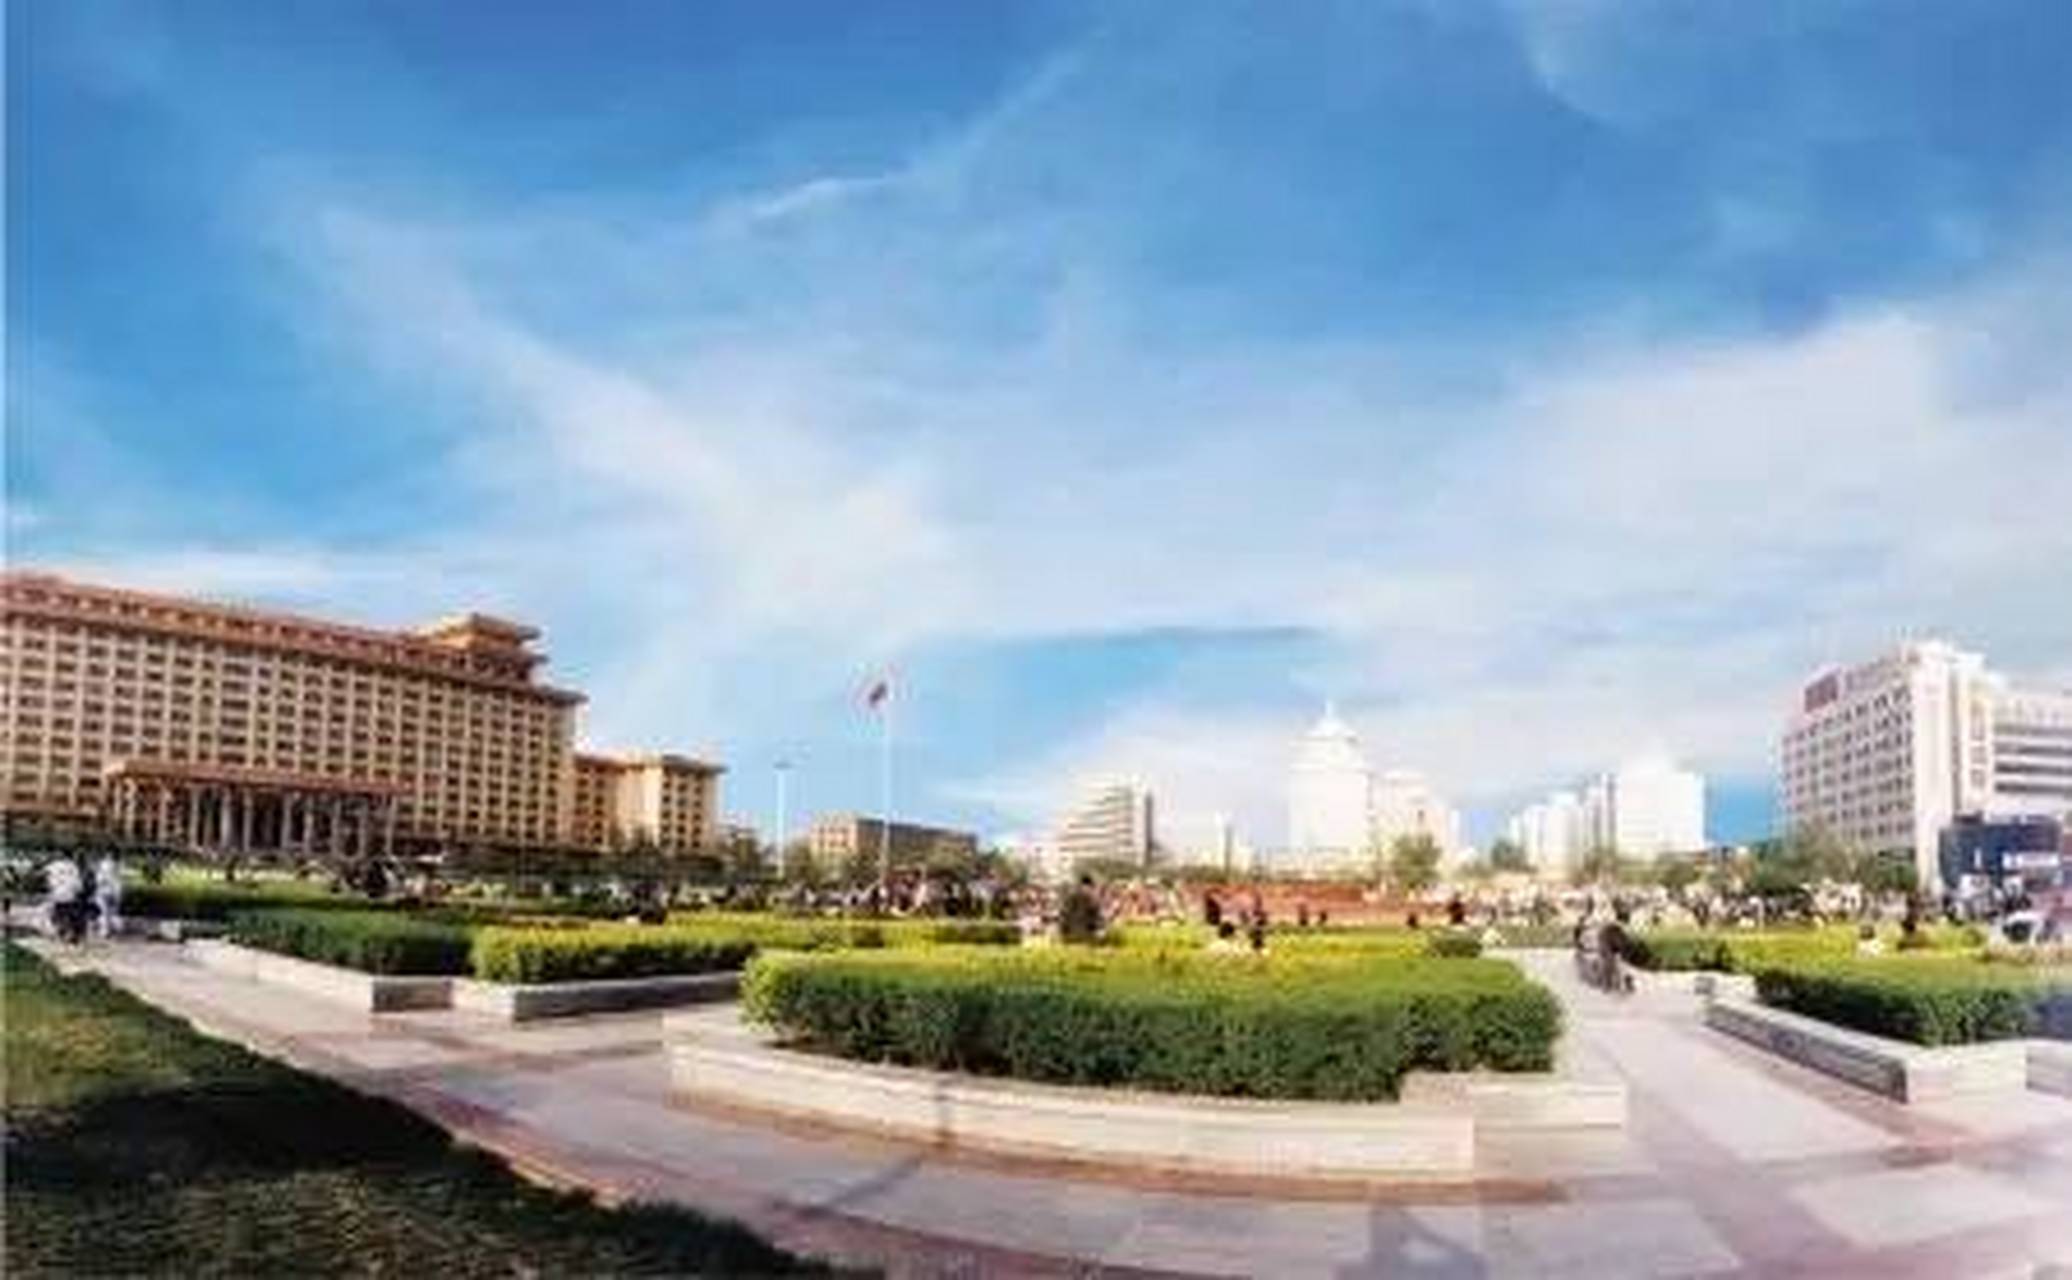 西安新城广场位于陕西省人民政府大楼以南,西新街与东新街交汇处,占地